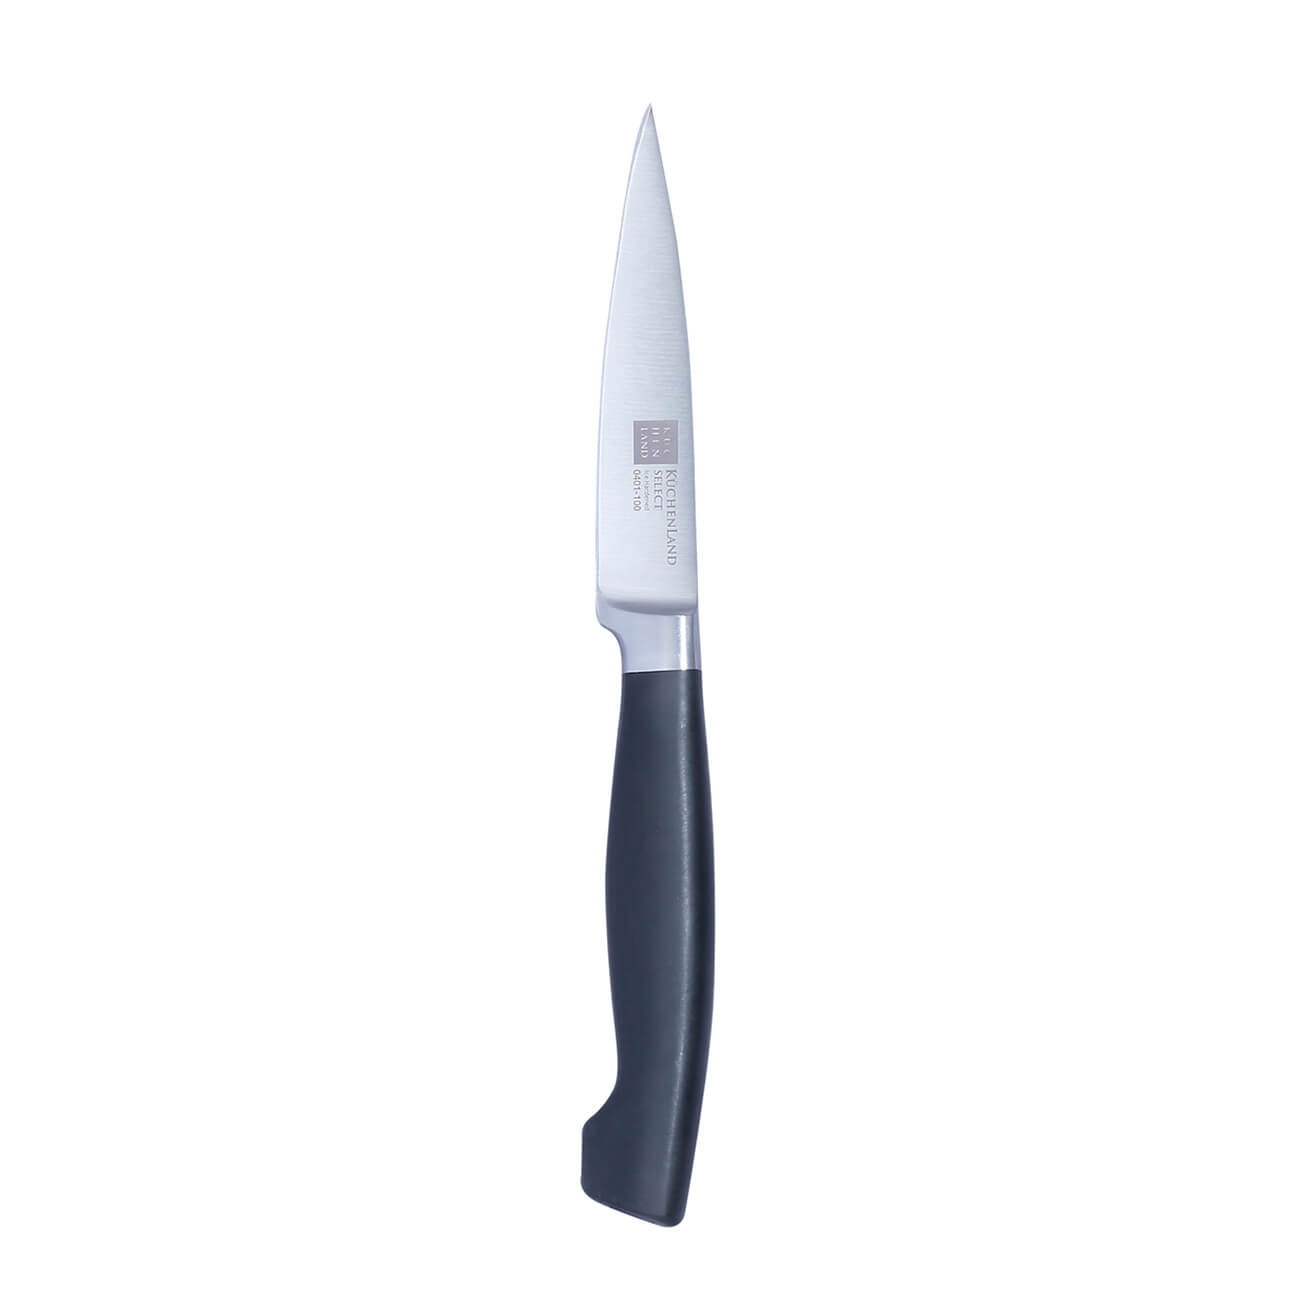 Kuchenland Нож для чистки овощей, 10 см, сталь/пластик, Select кухонный плододержатель для нарезки овощей и фруктов urm